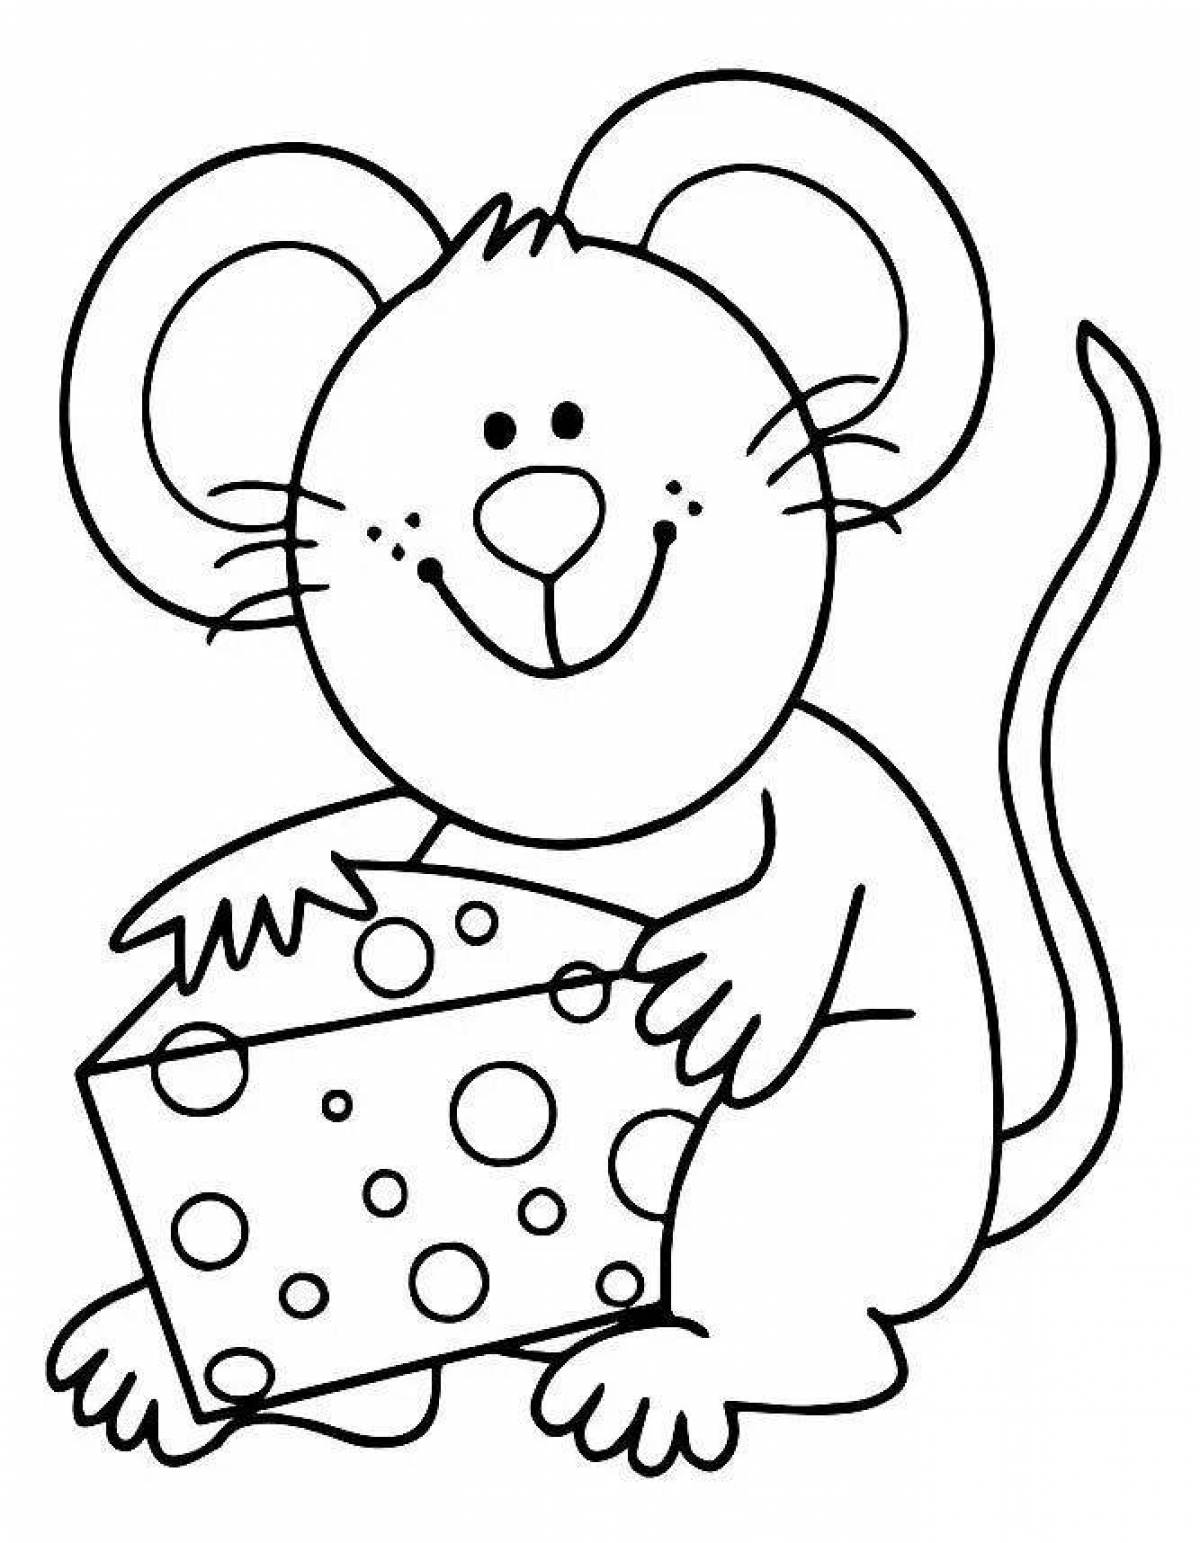 Милая раскраска мышь для детей 3-4 лет